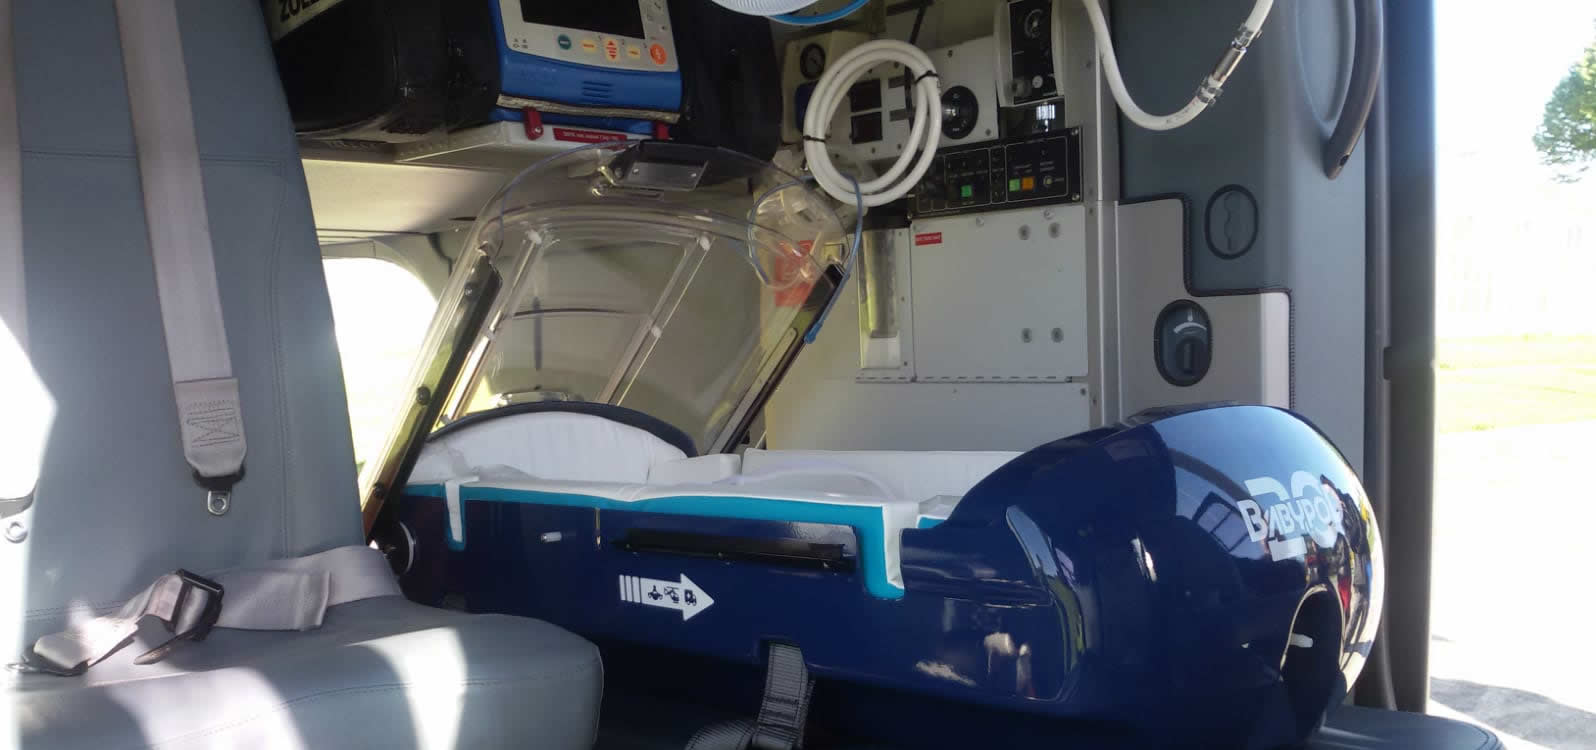 La incubadora, instalada en el interior del helicóptero medicalizado